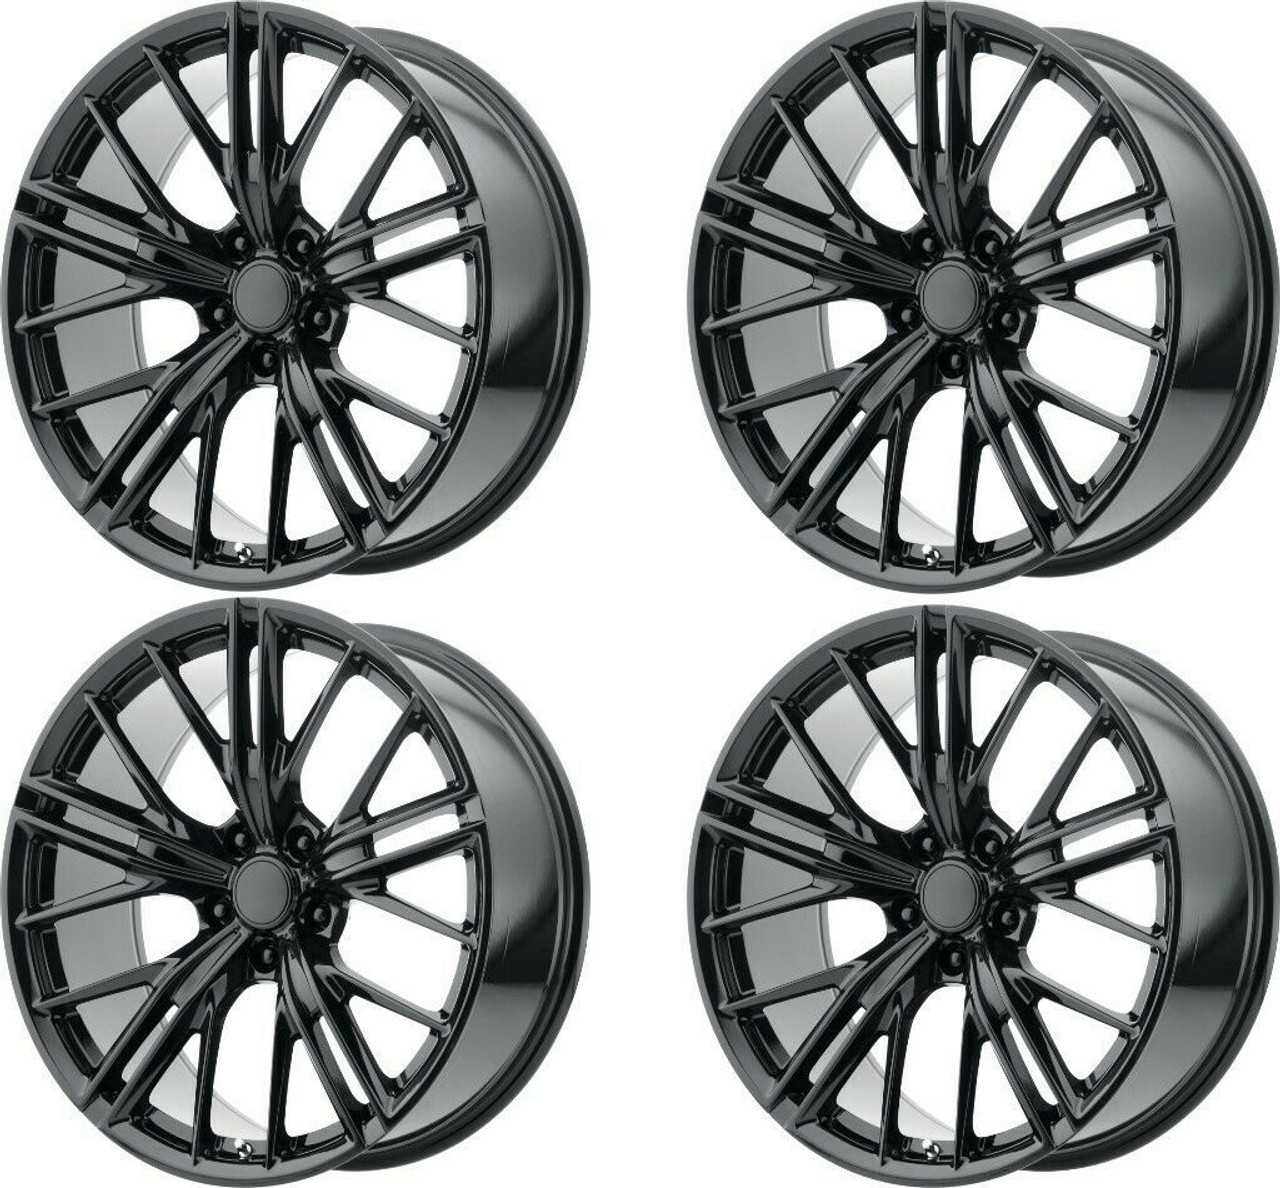 Set 4 Performance Replicas PR194 20x10 5x120 Gloss Black Wheels 20" 35mm Rims